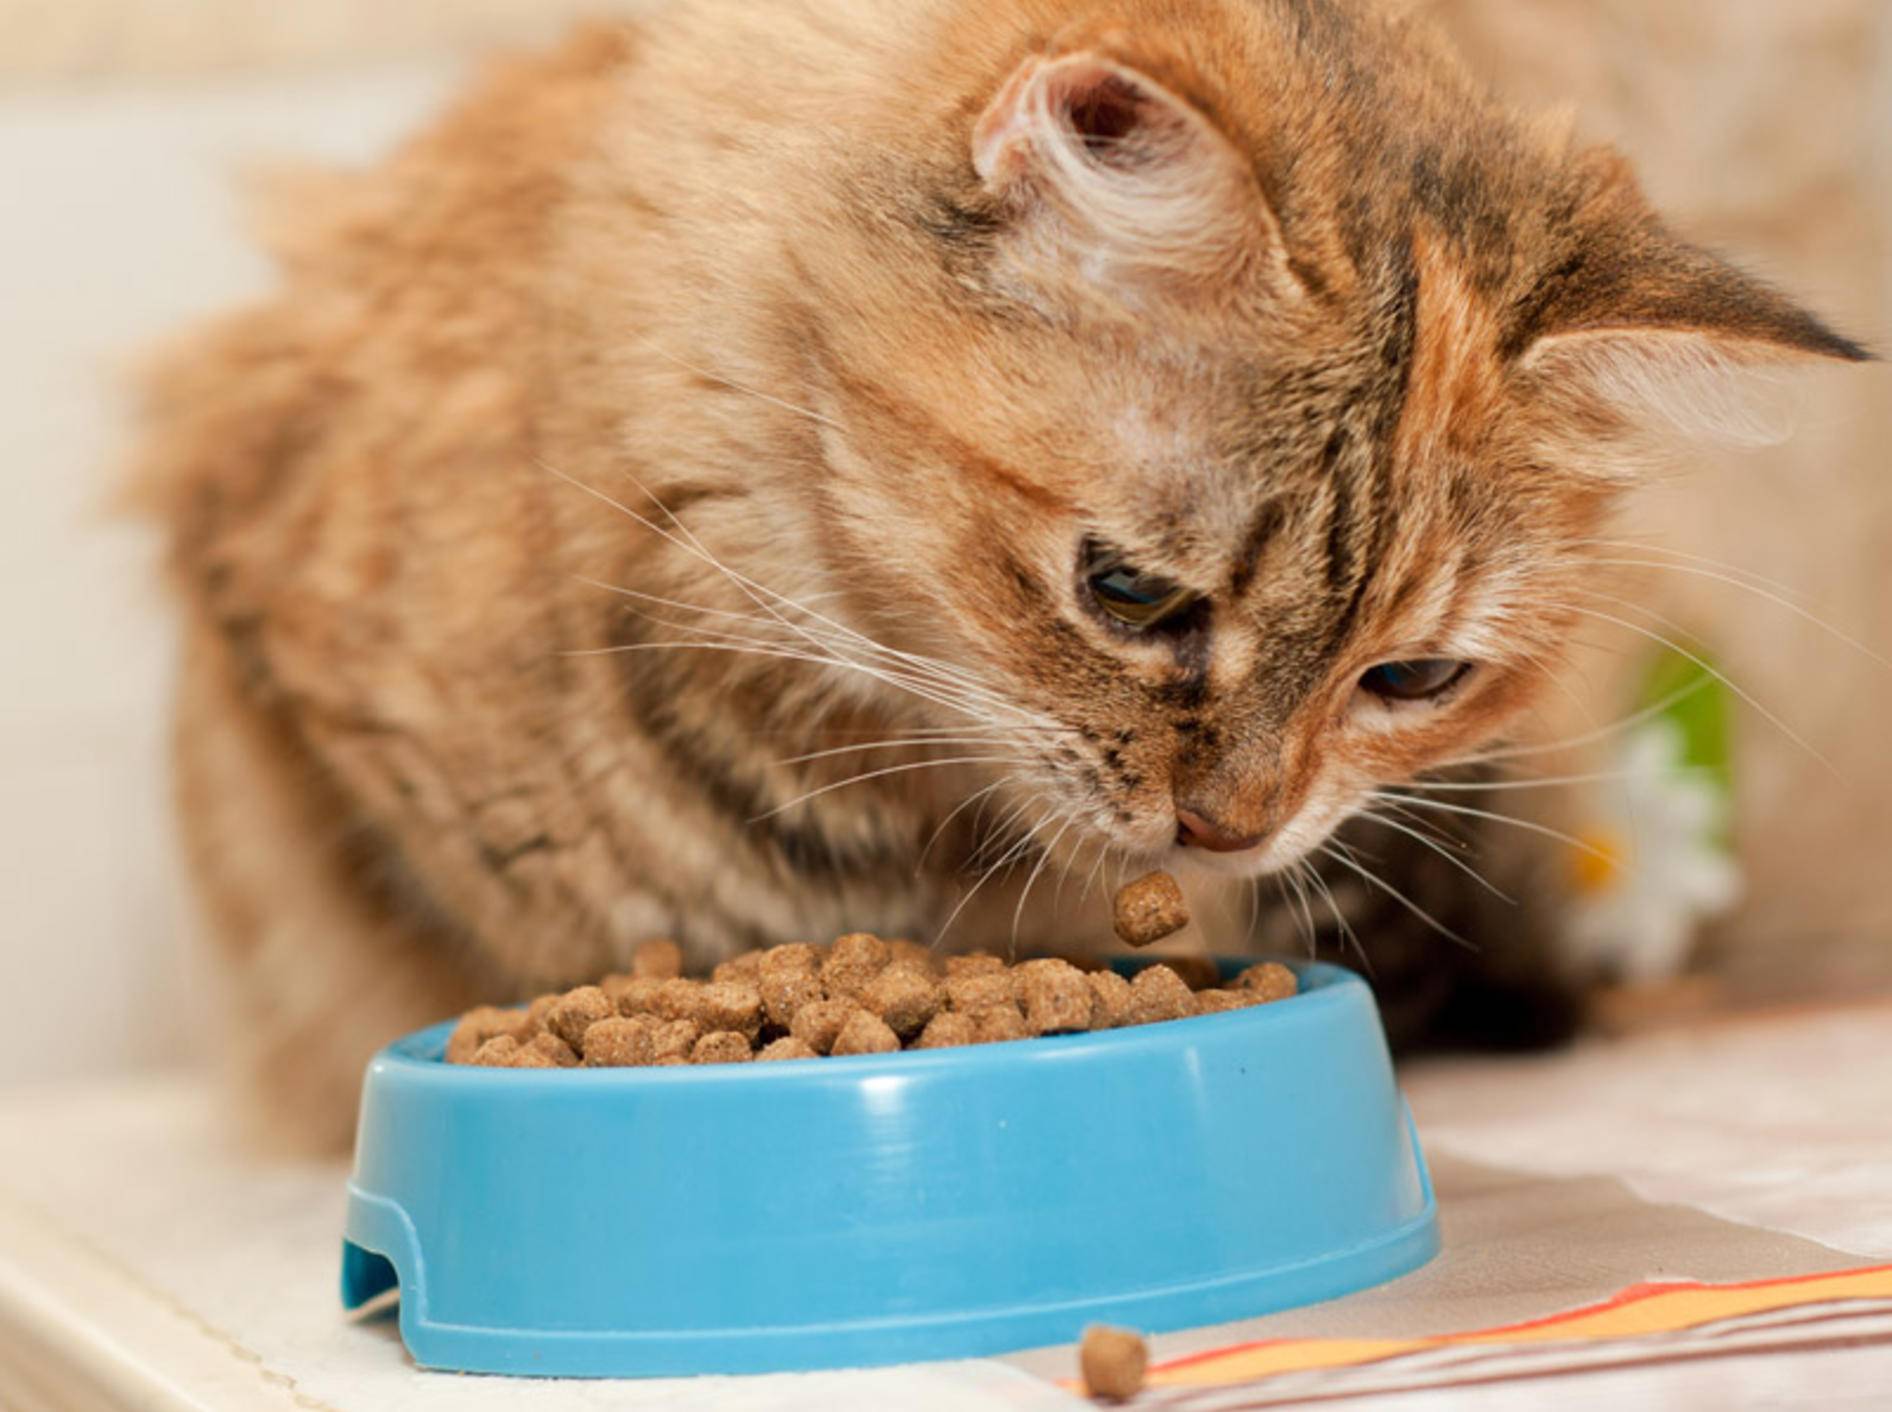 Stiftung Warentest hat Trockenfutter für Katzenfutter untersucht - Bild: Shutterstock / Nataliia Dvukhimenna